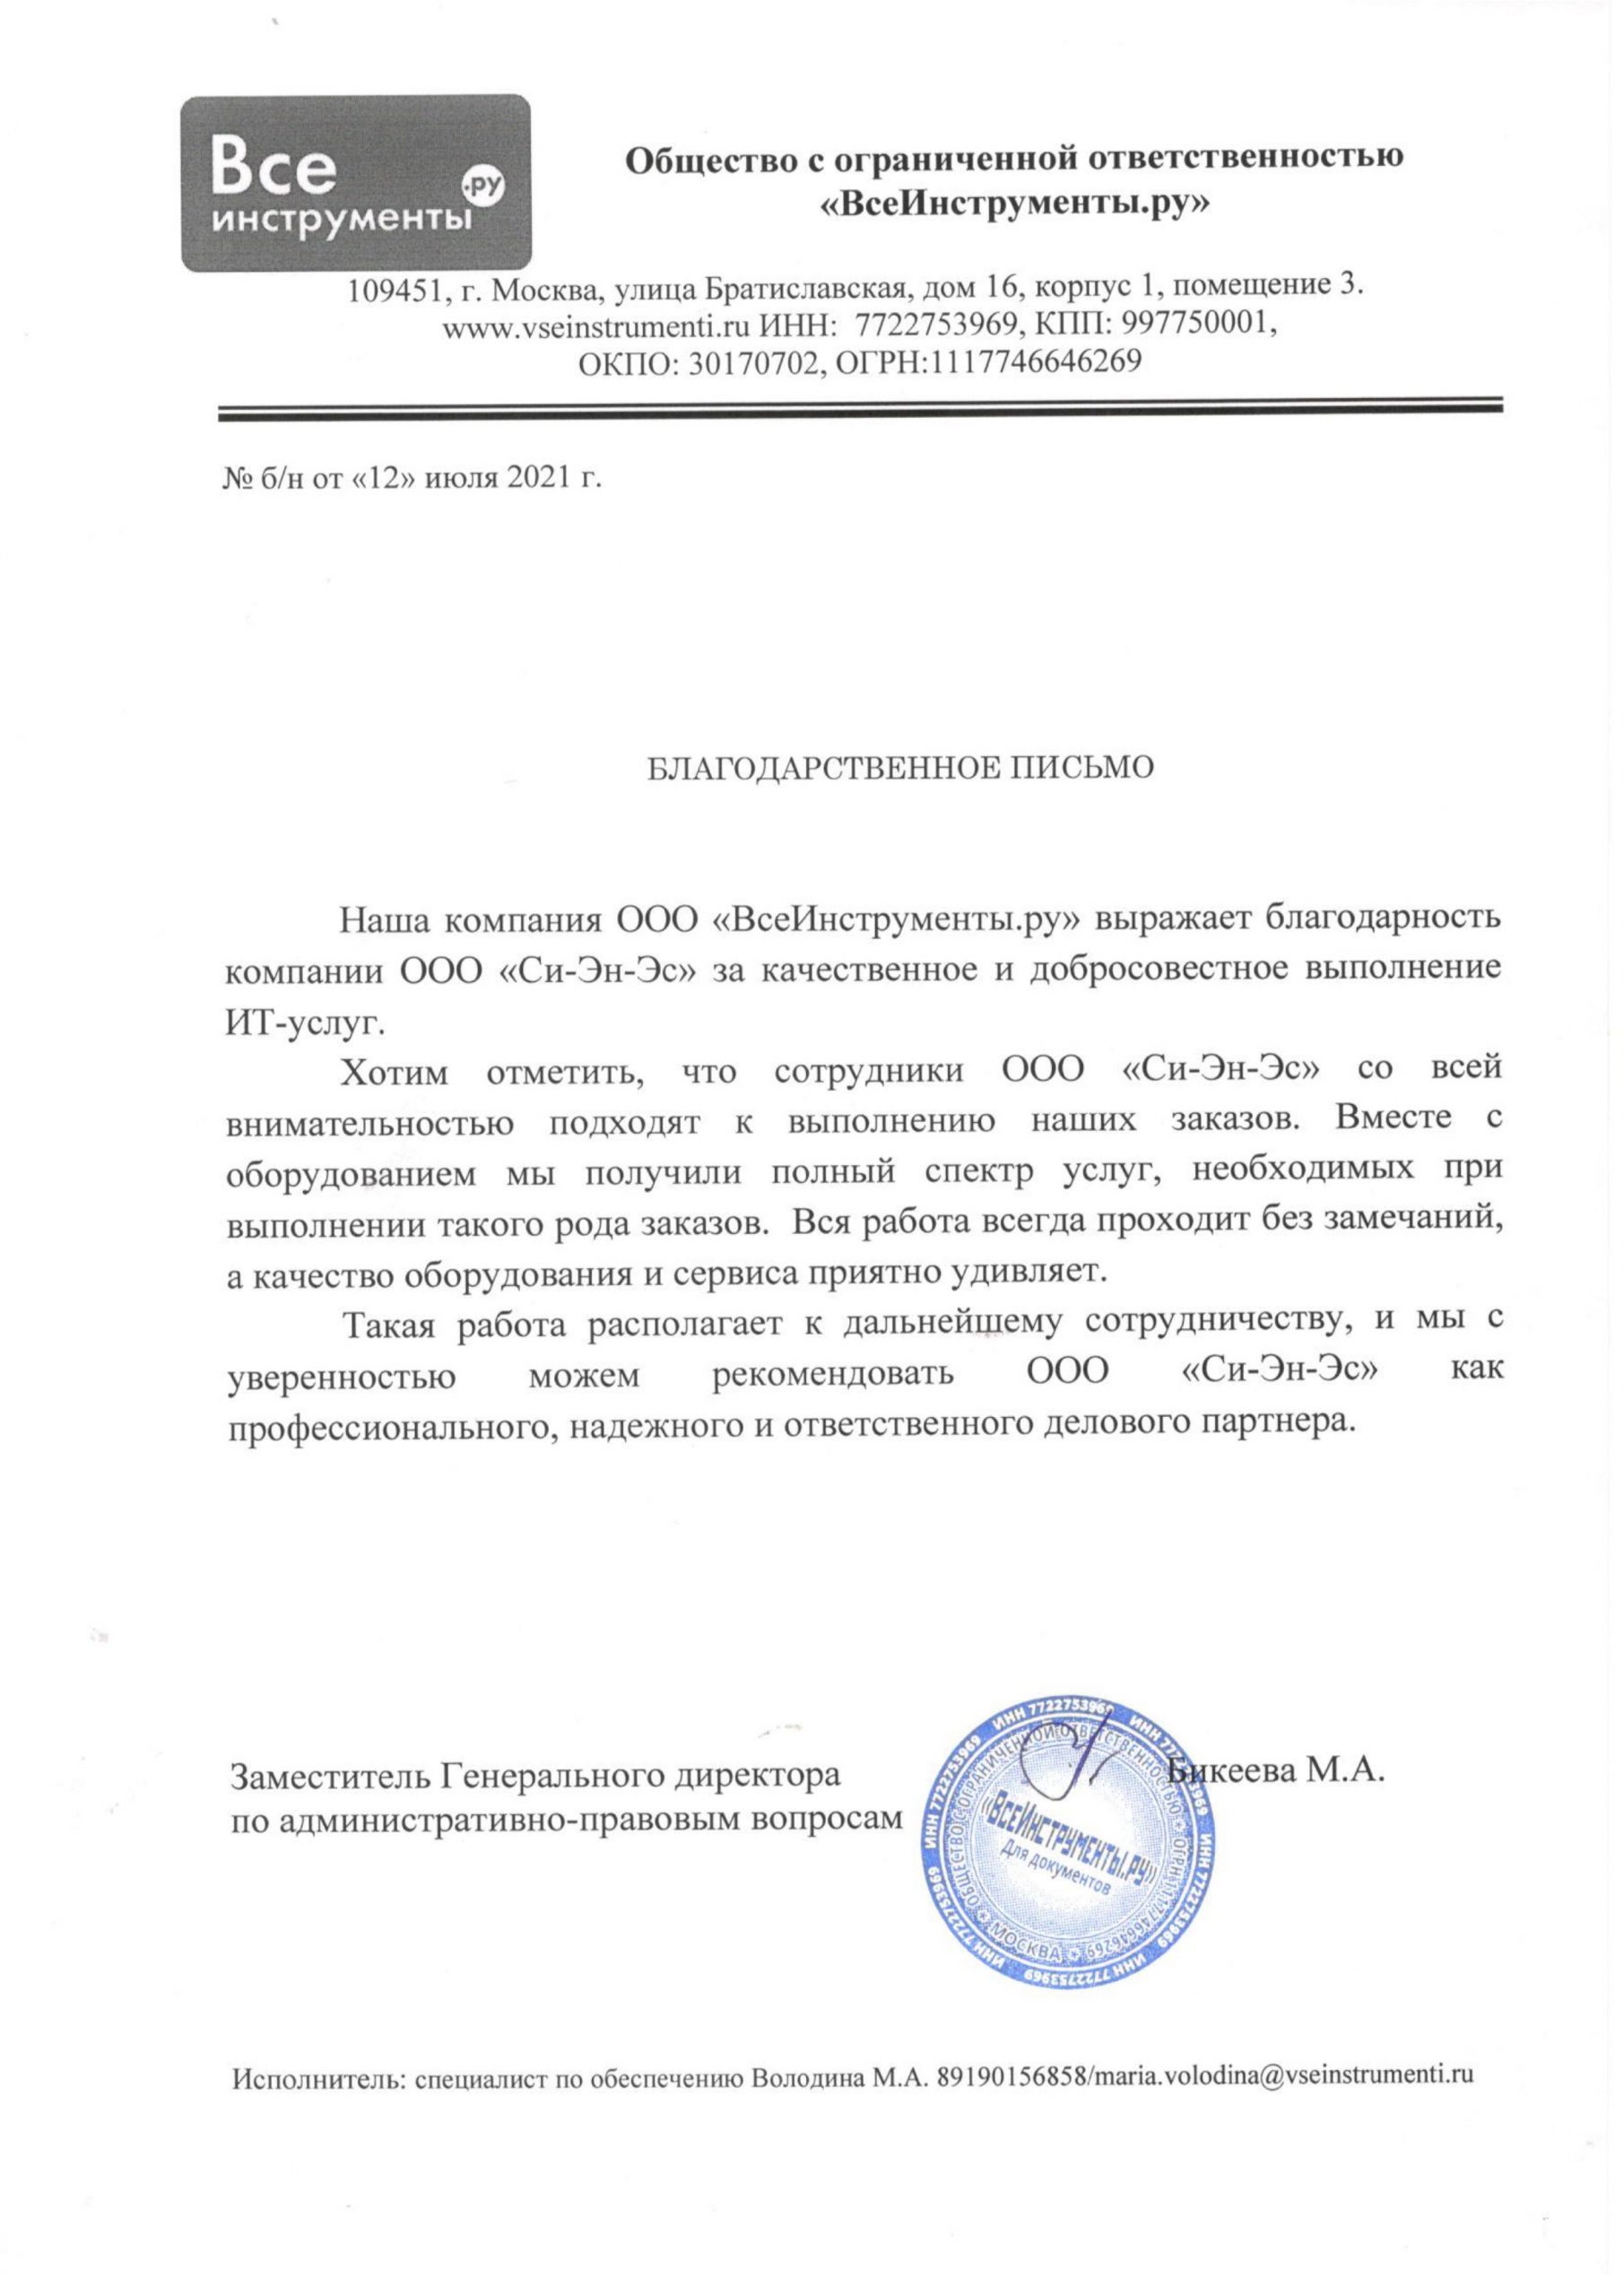 Отзыв: Бикеева М.А. - Заместитель Генерального директора по административно-правовым вопросам